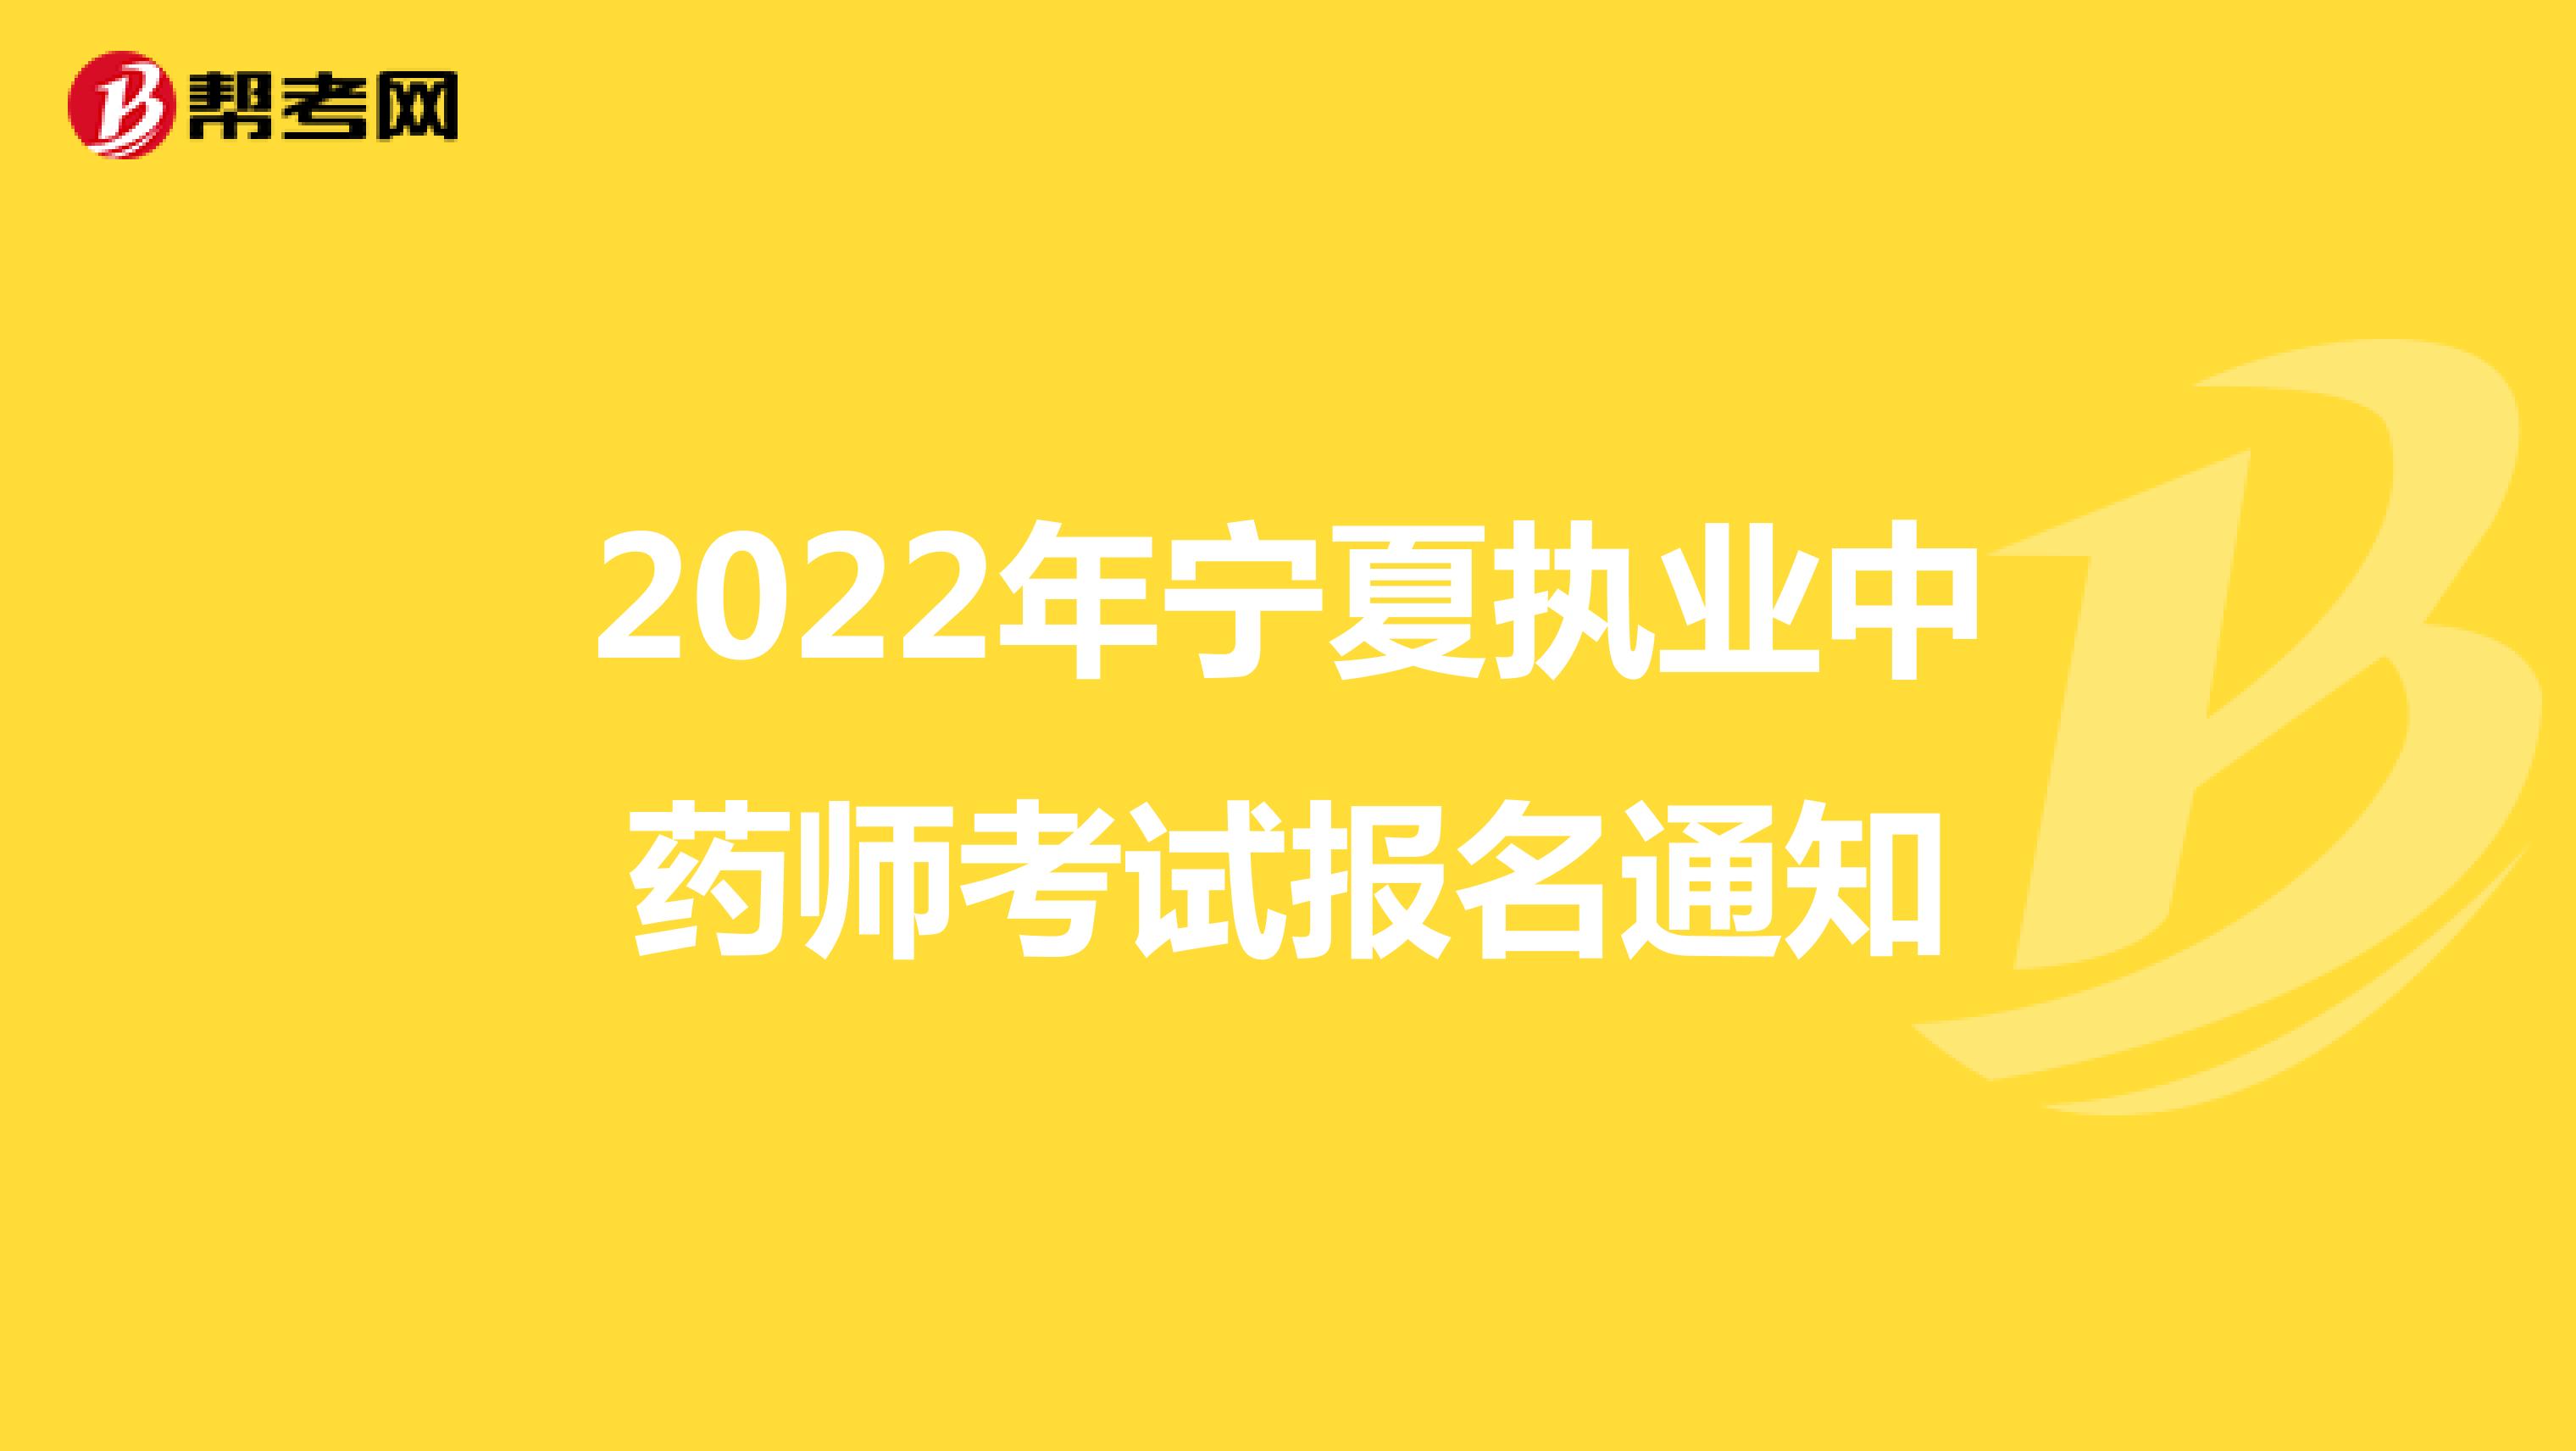 2022年寧夏執業中藥師考試報名通知